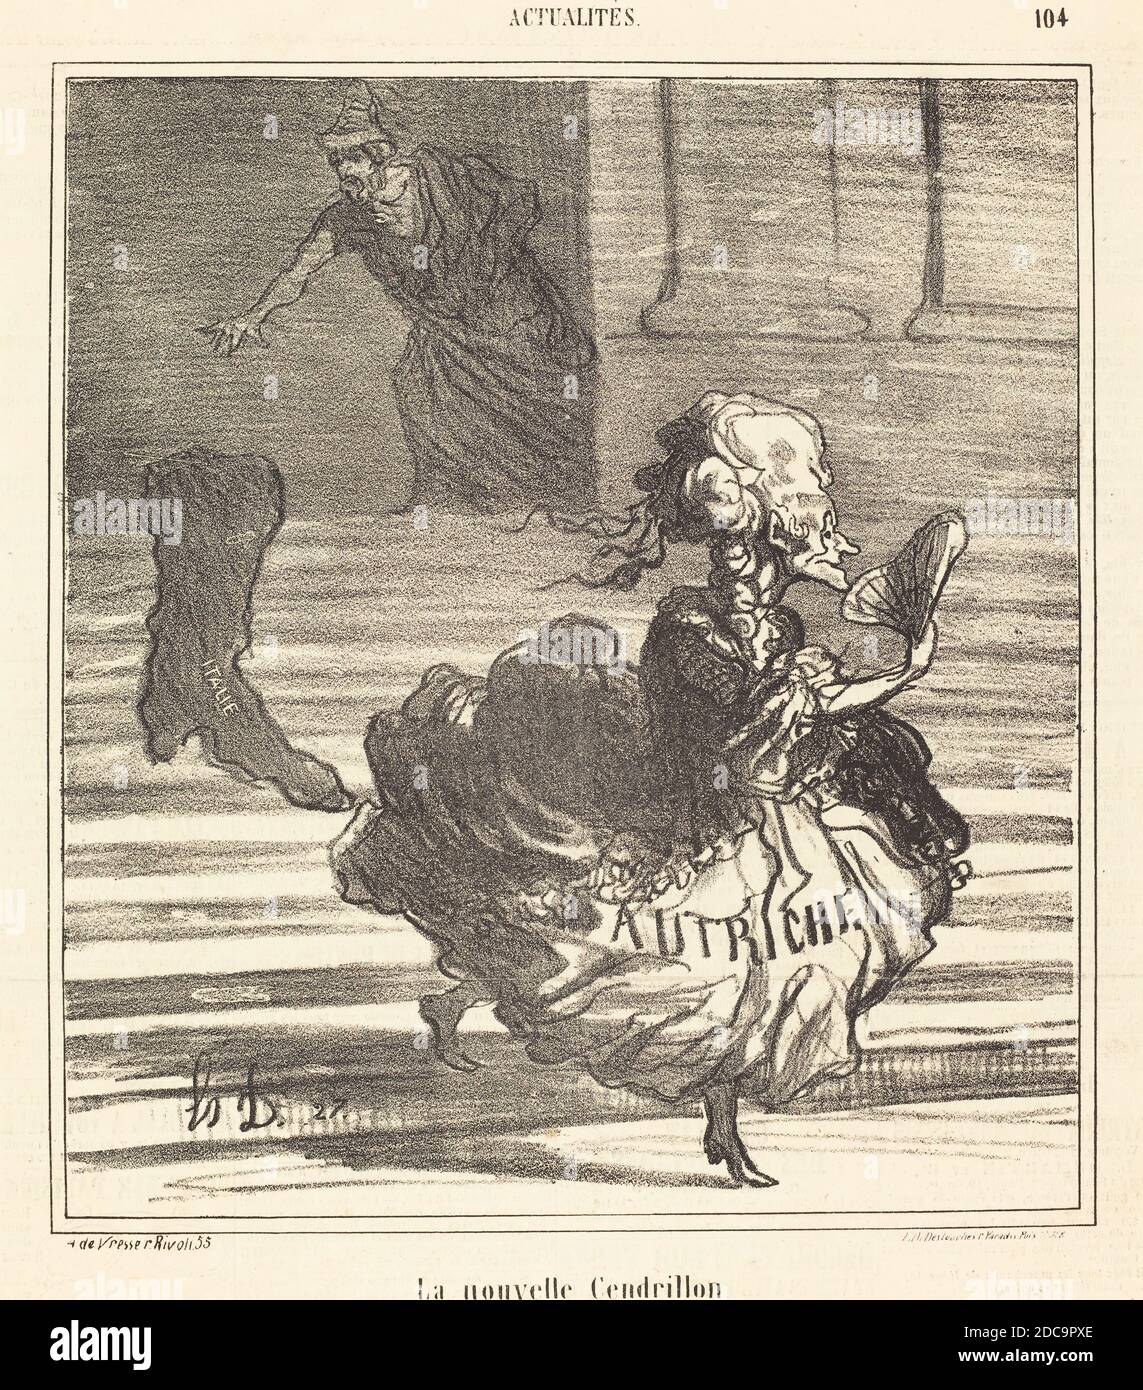 Honoré Daumier, (artist), French, 1808 - 1879, La Nouvelle Cendrillon, Actualités, (series), 1866, lithograph on newsprint Stock Photo